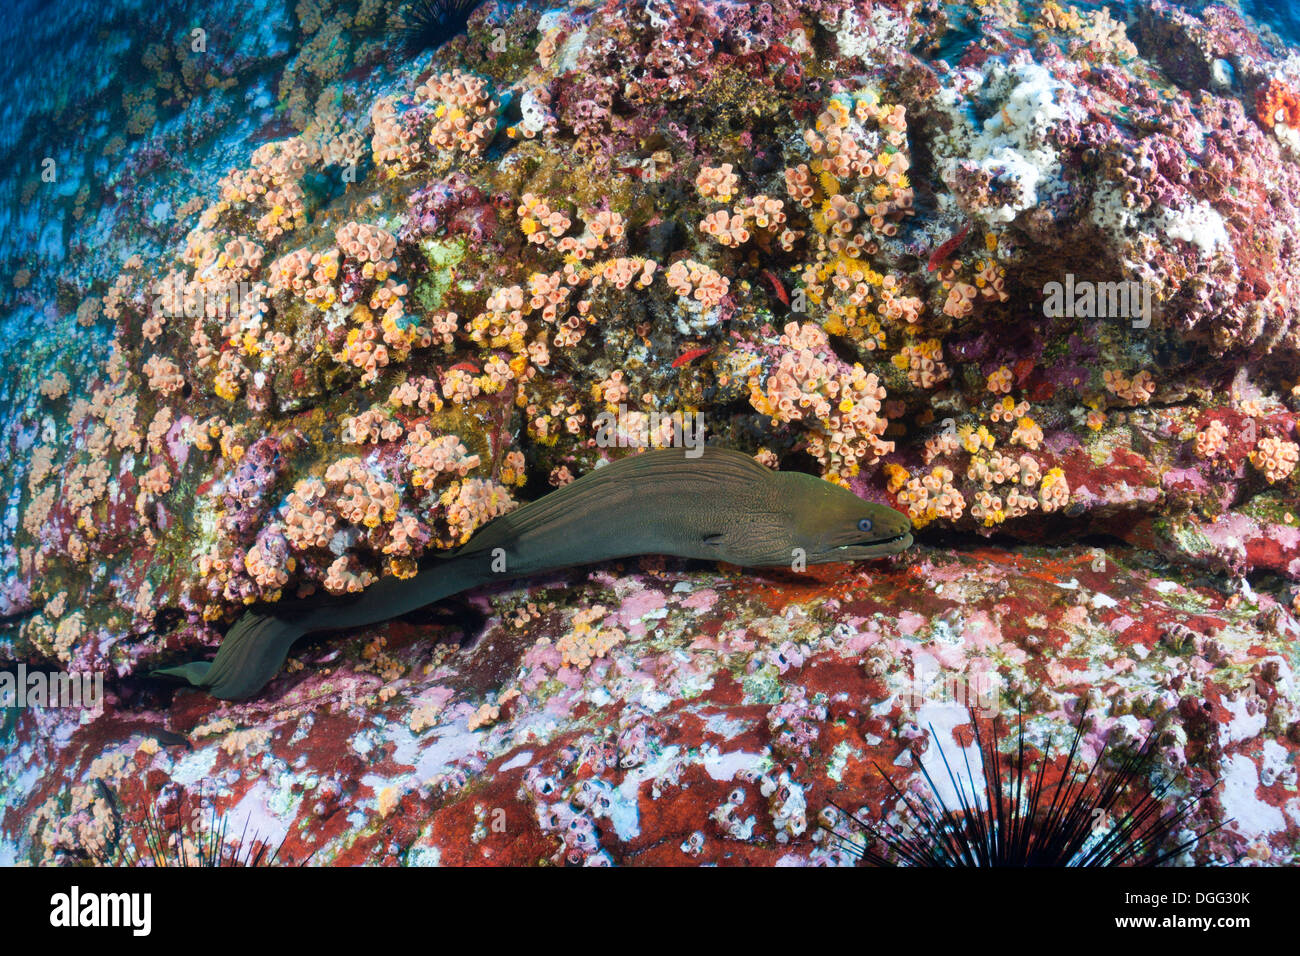 Panamic grüne Muräne, Gymnothorax Castaneus, Socorro, Revillagigedo-Inseln, Mexiko Stockfoto